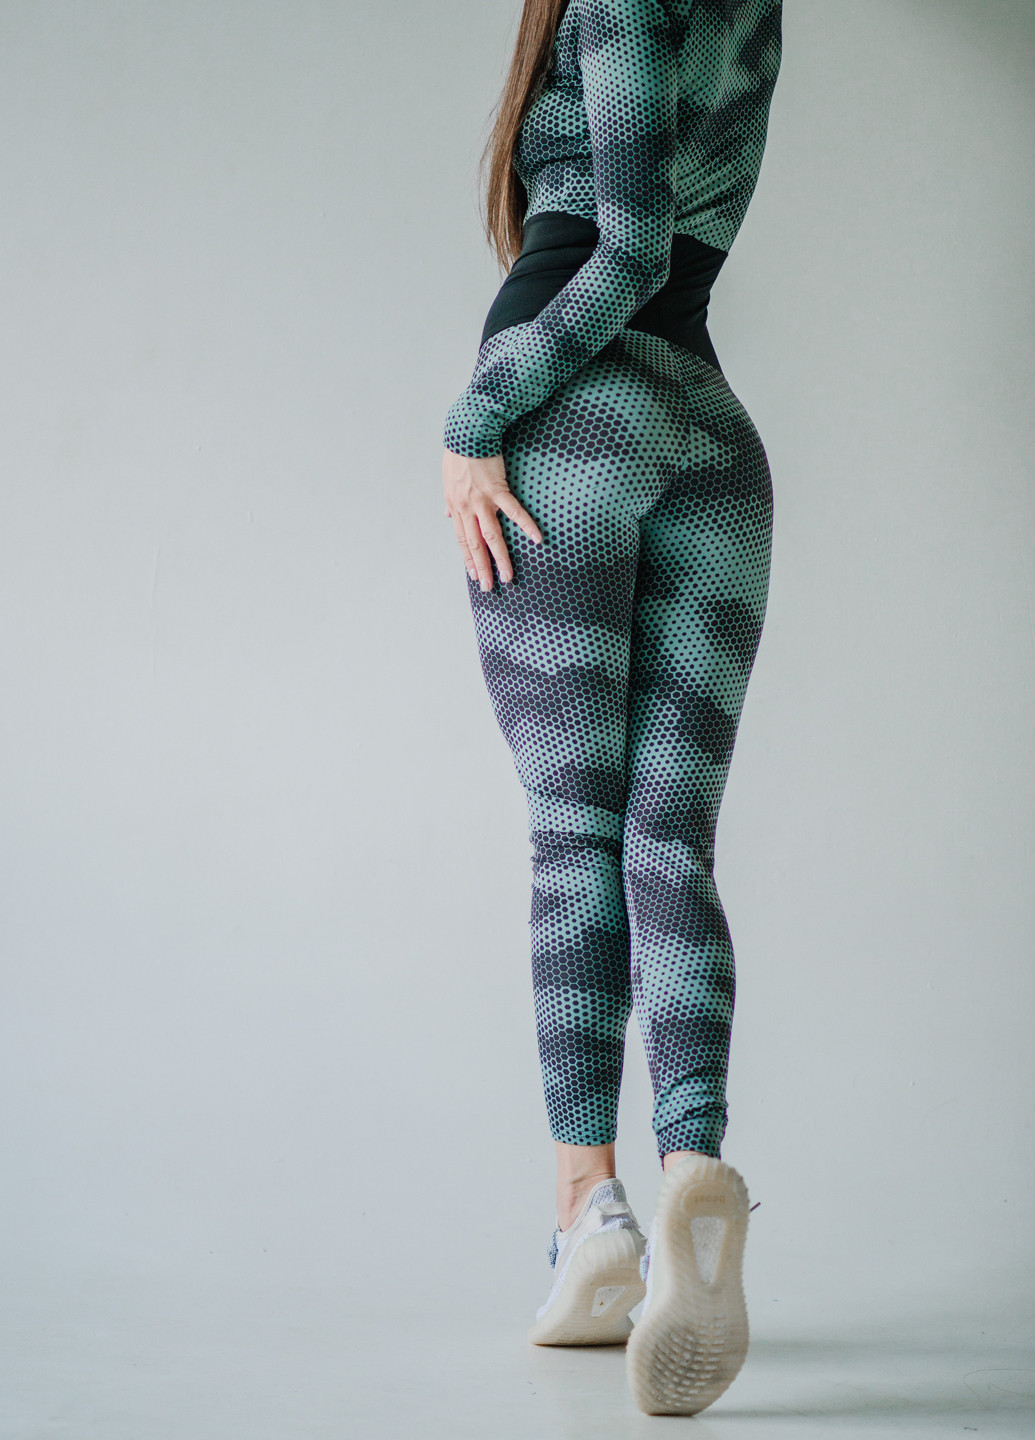 Комбинезон Asalart комбинезон-брюки абстрактный зелёный спортивный трикотаж, полиэстер